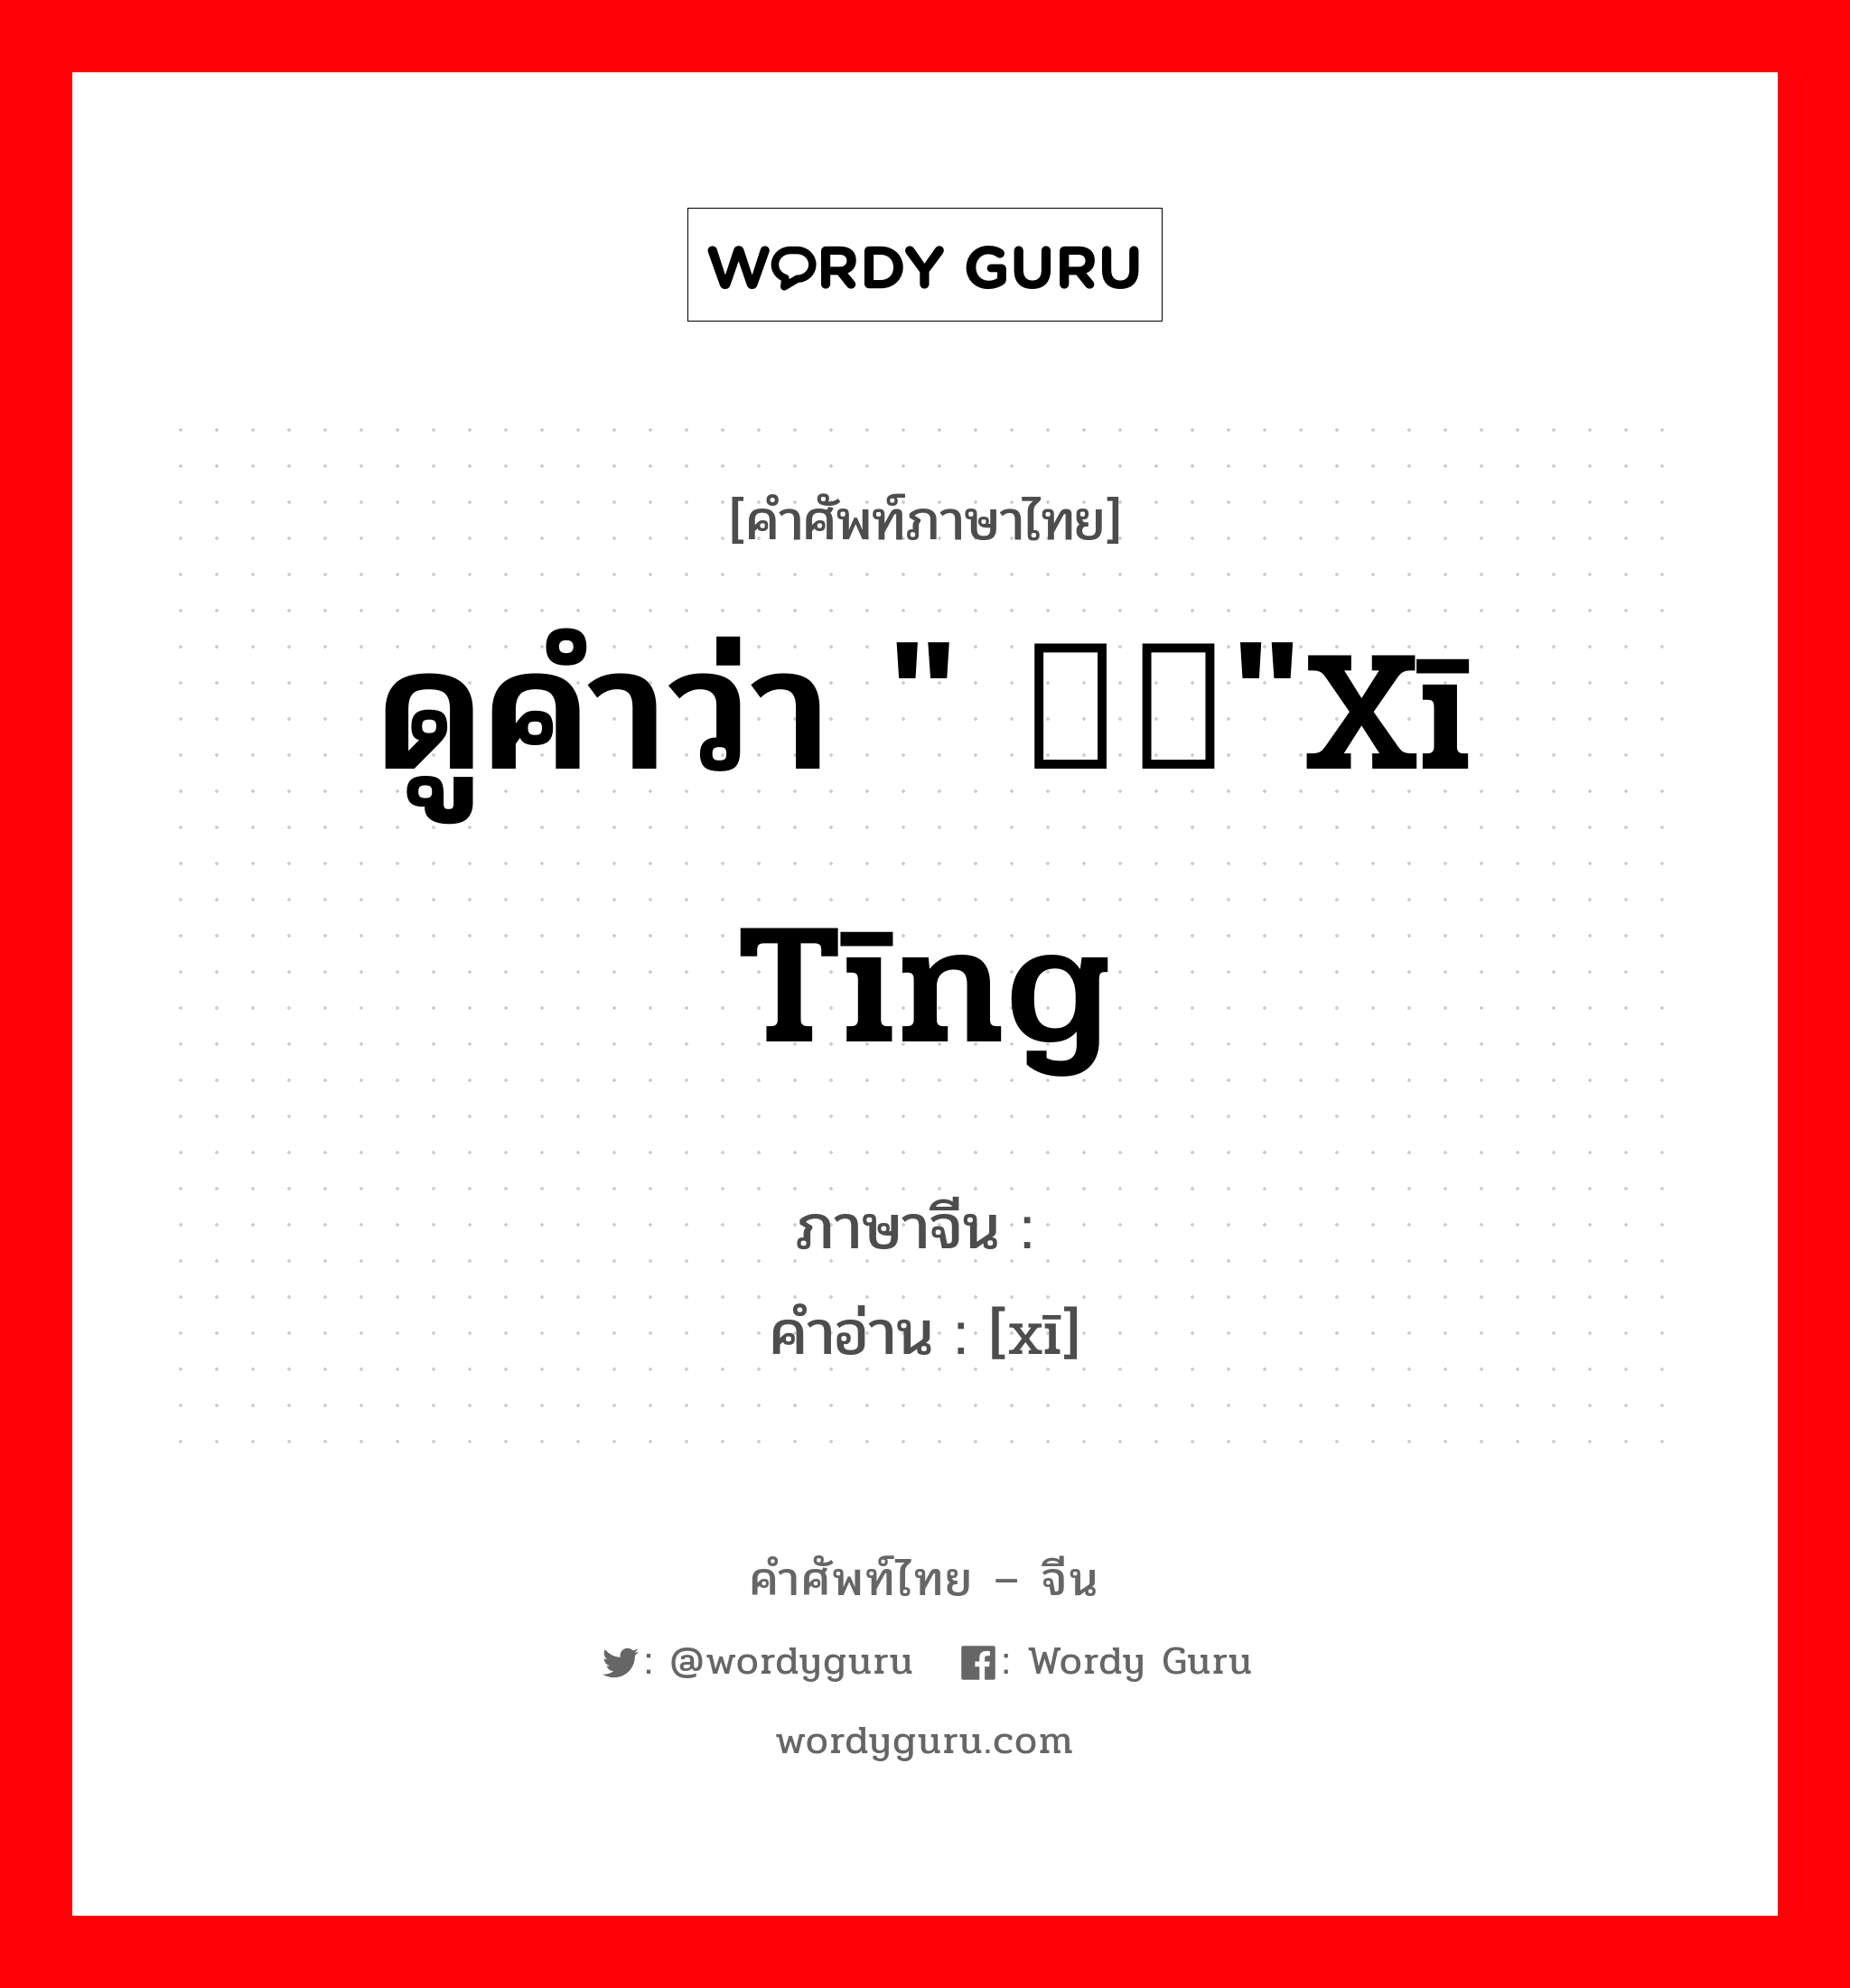 ดูคำว่า " 烯烃"xī tīng ภาษาจีนคืออะไร, คำศัพท์ภาษาไทย - จีน ดูคำว่า " 烯烃"xī tīng ภาษาจีน 烯 คำอ่าน [xī]